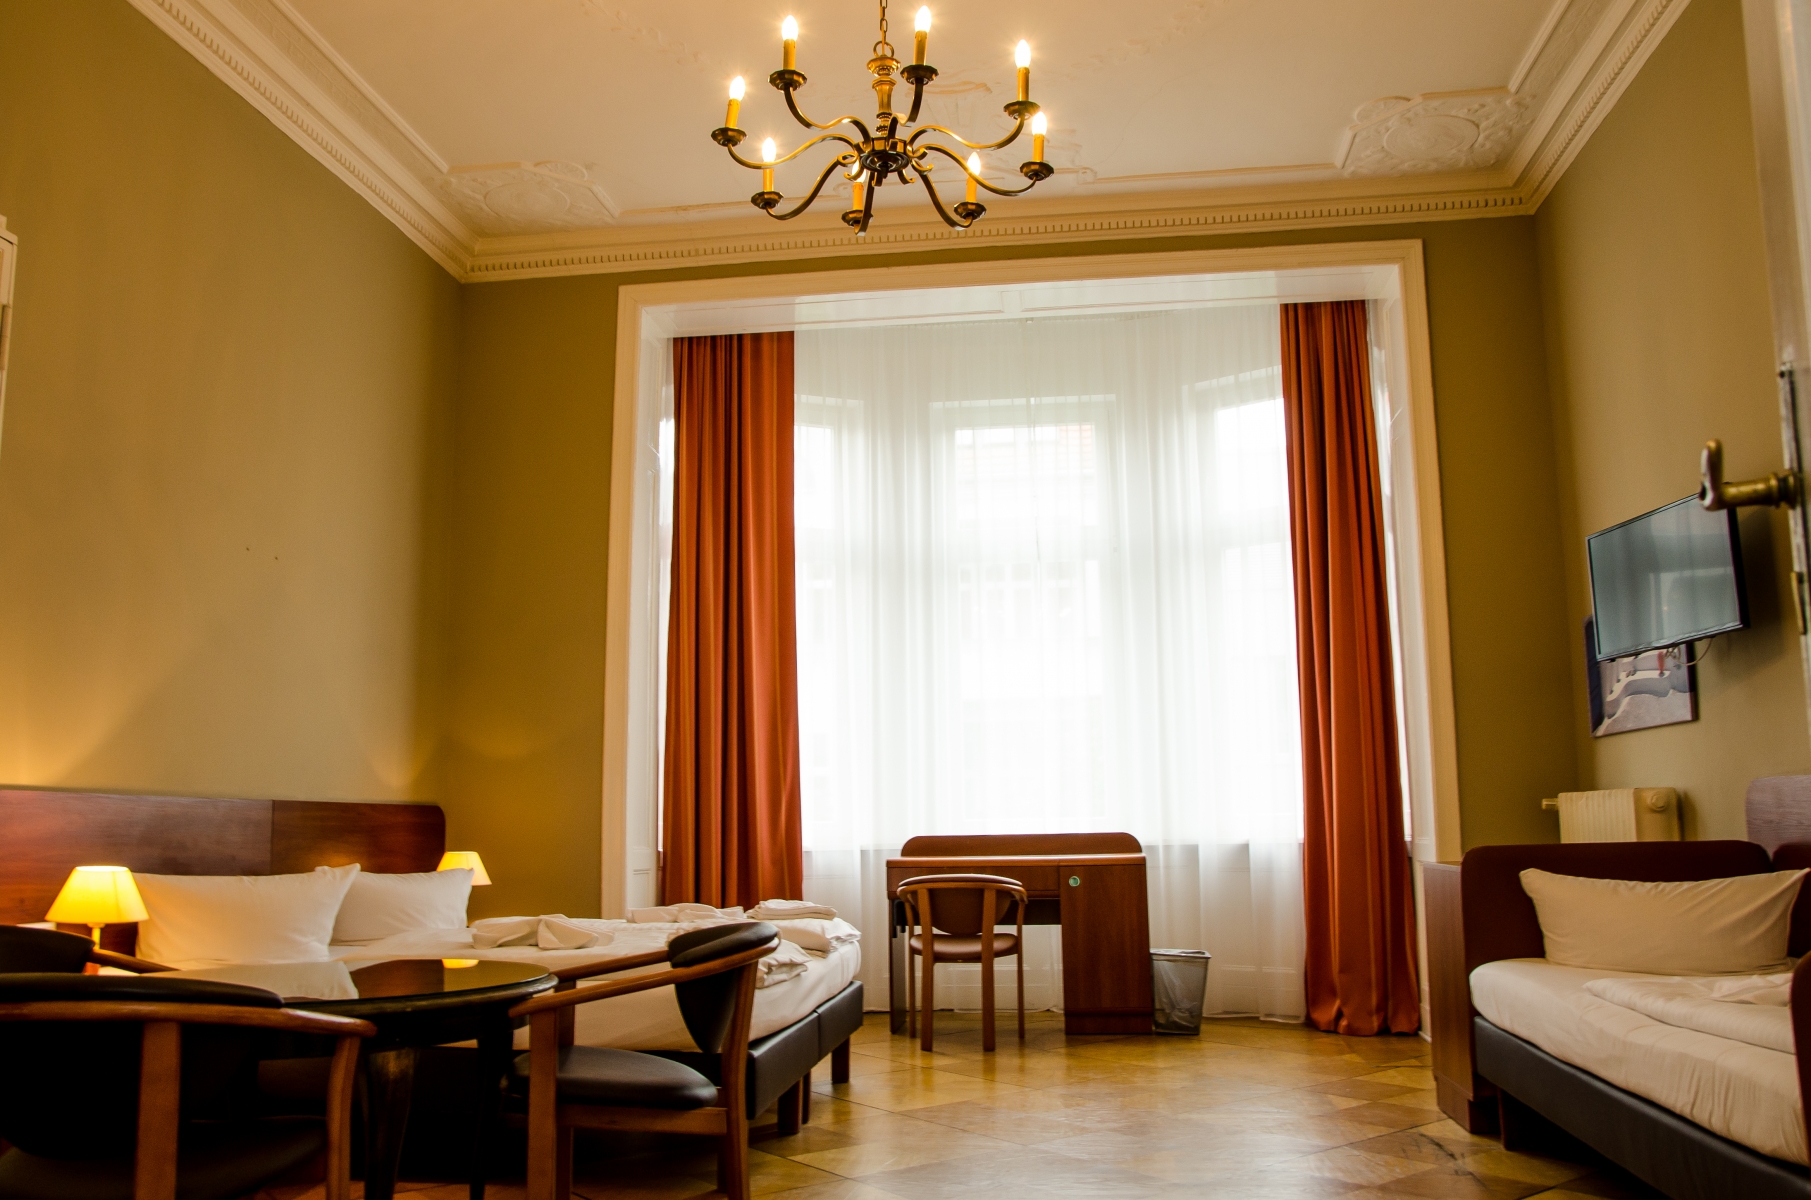 Hotel Astrid am Kurfürstendamm <br/>76.67 ew <br/> <a href='http://vakantieoplossing.nl/outpage/?id=2fb9470a0c1b8ef910f9ba72a46dff03' target='_blank'>View Details</a>